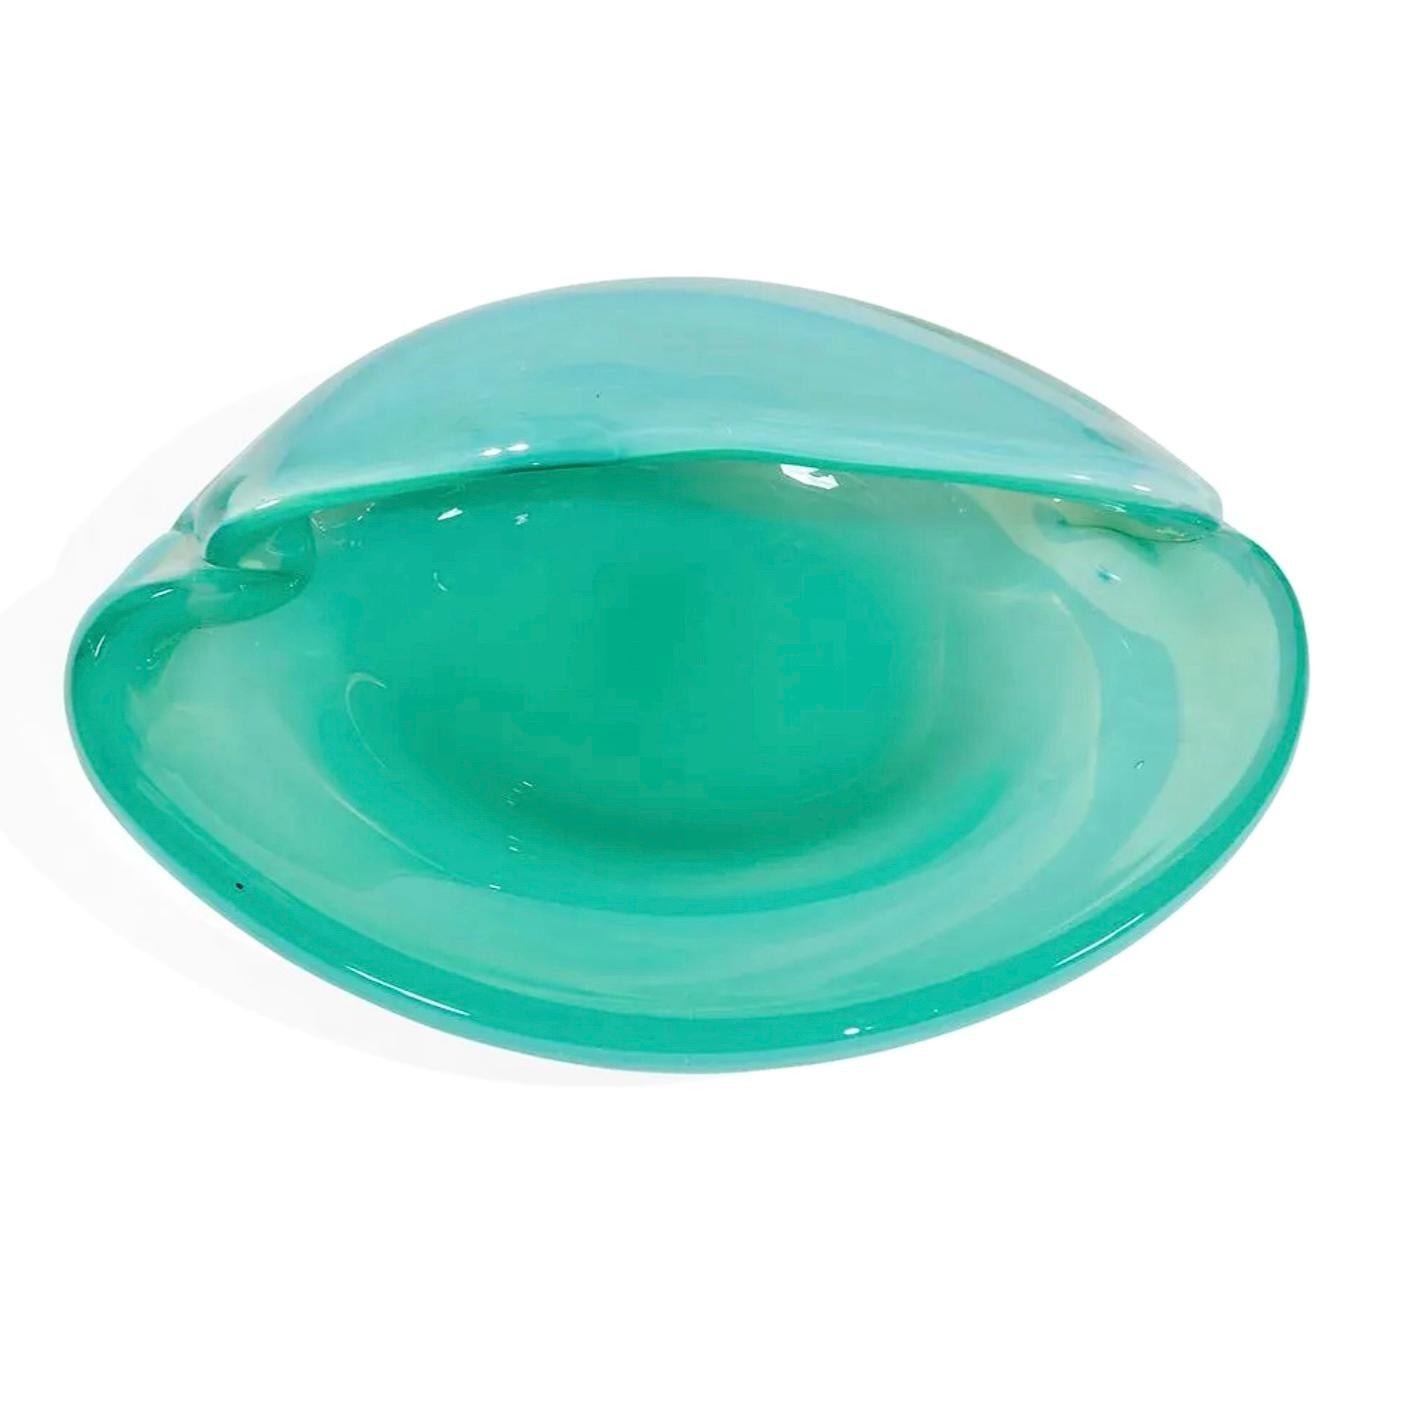 Alfredo Barbini Murano art glass clam bowl, vide-poche, Italy, 1960s, labeled.
Alfredo Barbini (1912-2007); Teal/Turquoise clam bowl; Murano, Italy, circa 1960; partial sticker label
Measures: 7